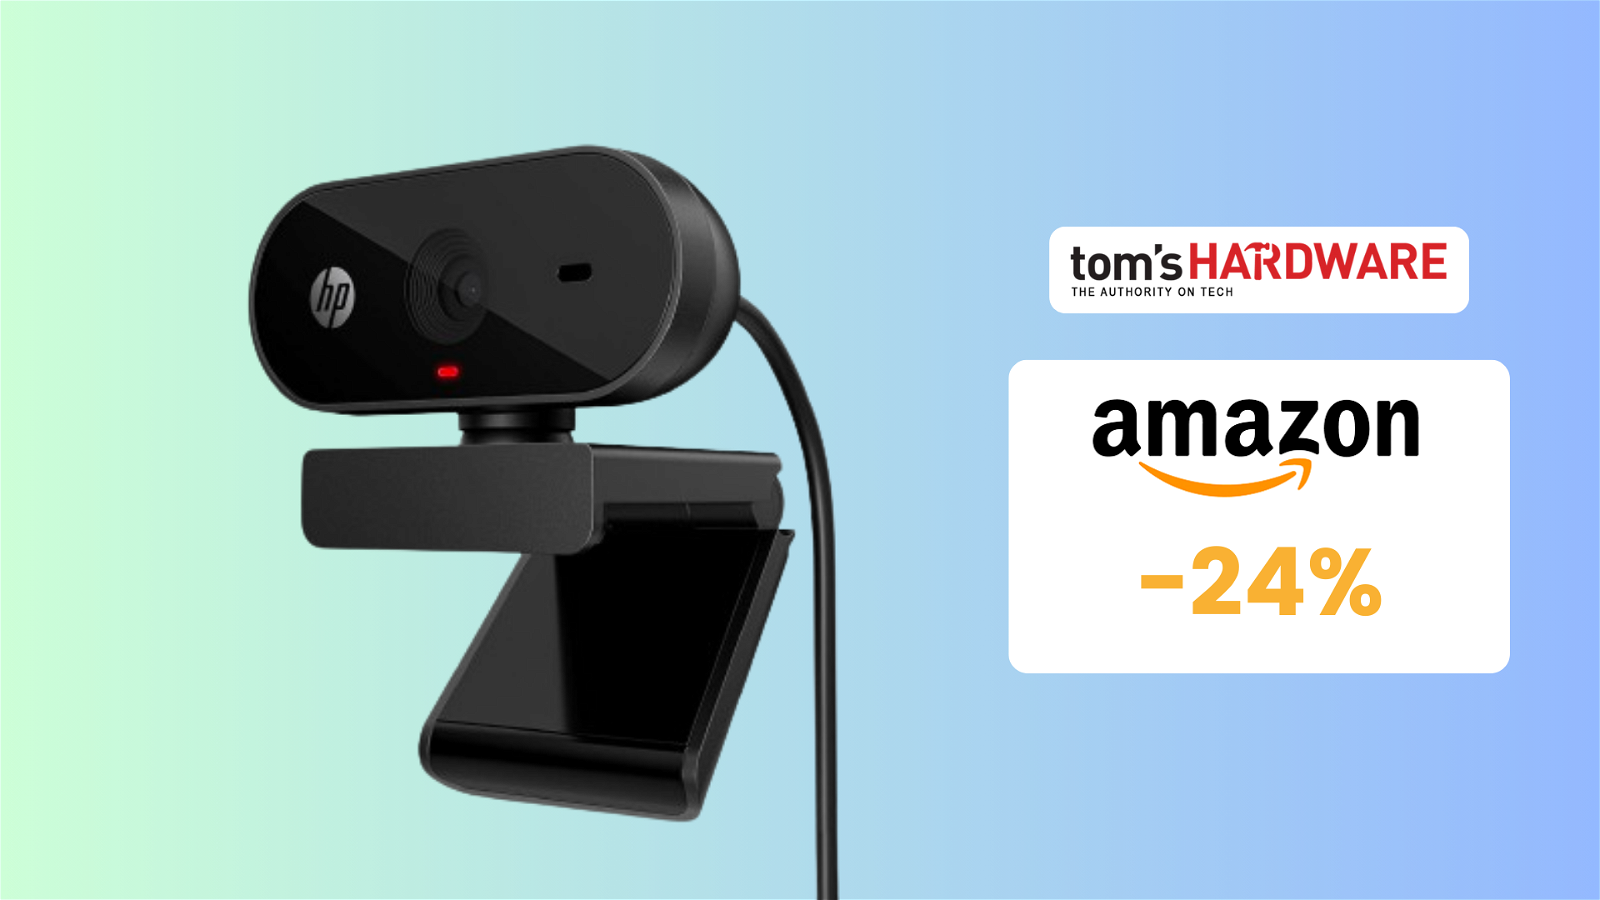 Immagine di Questa webcam HP è Full HD e costa appena 31€!